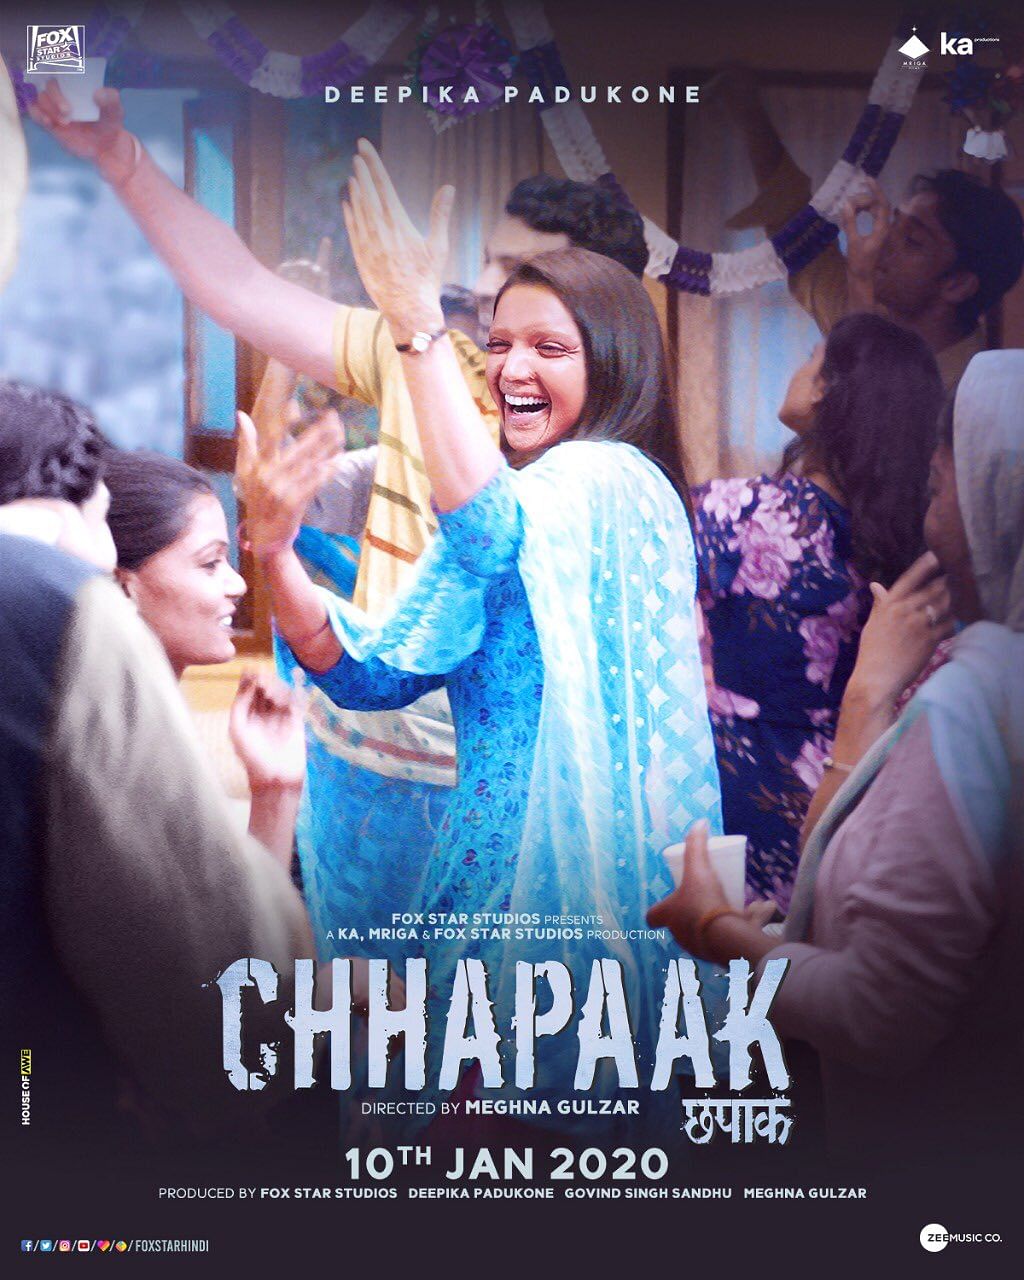 Why we need more films like 'Chhapaak'